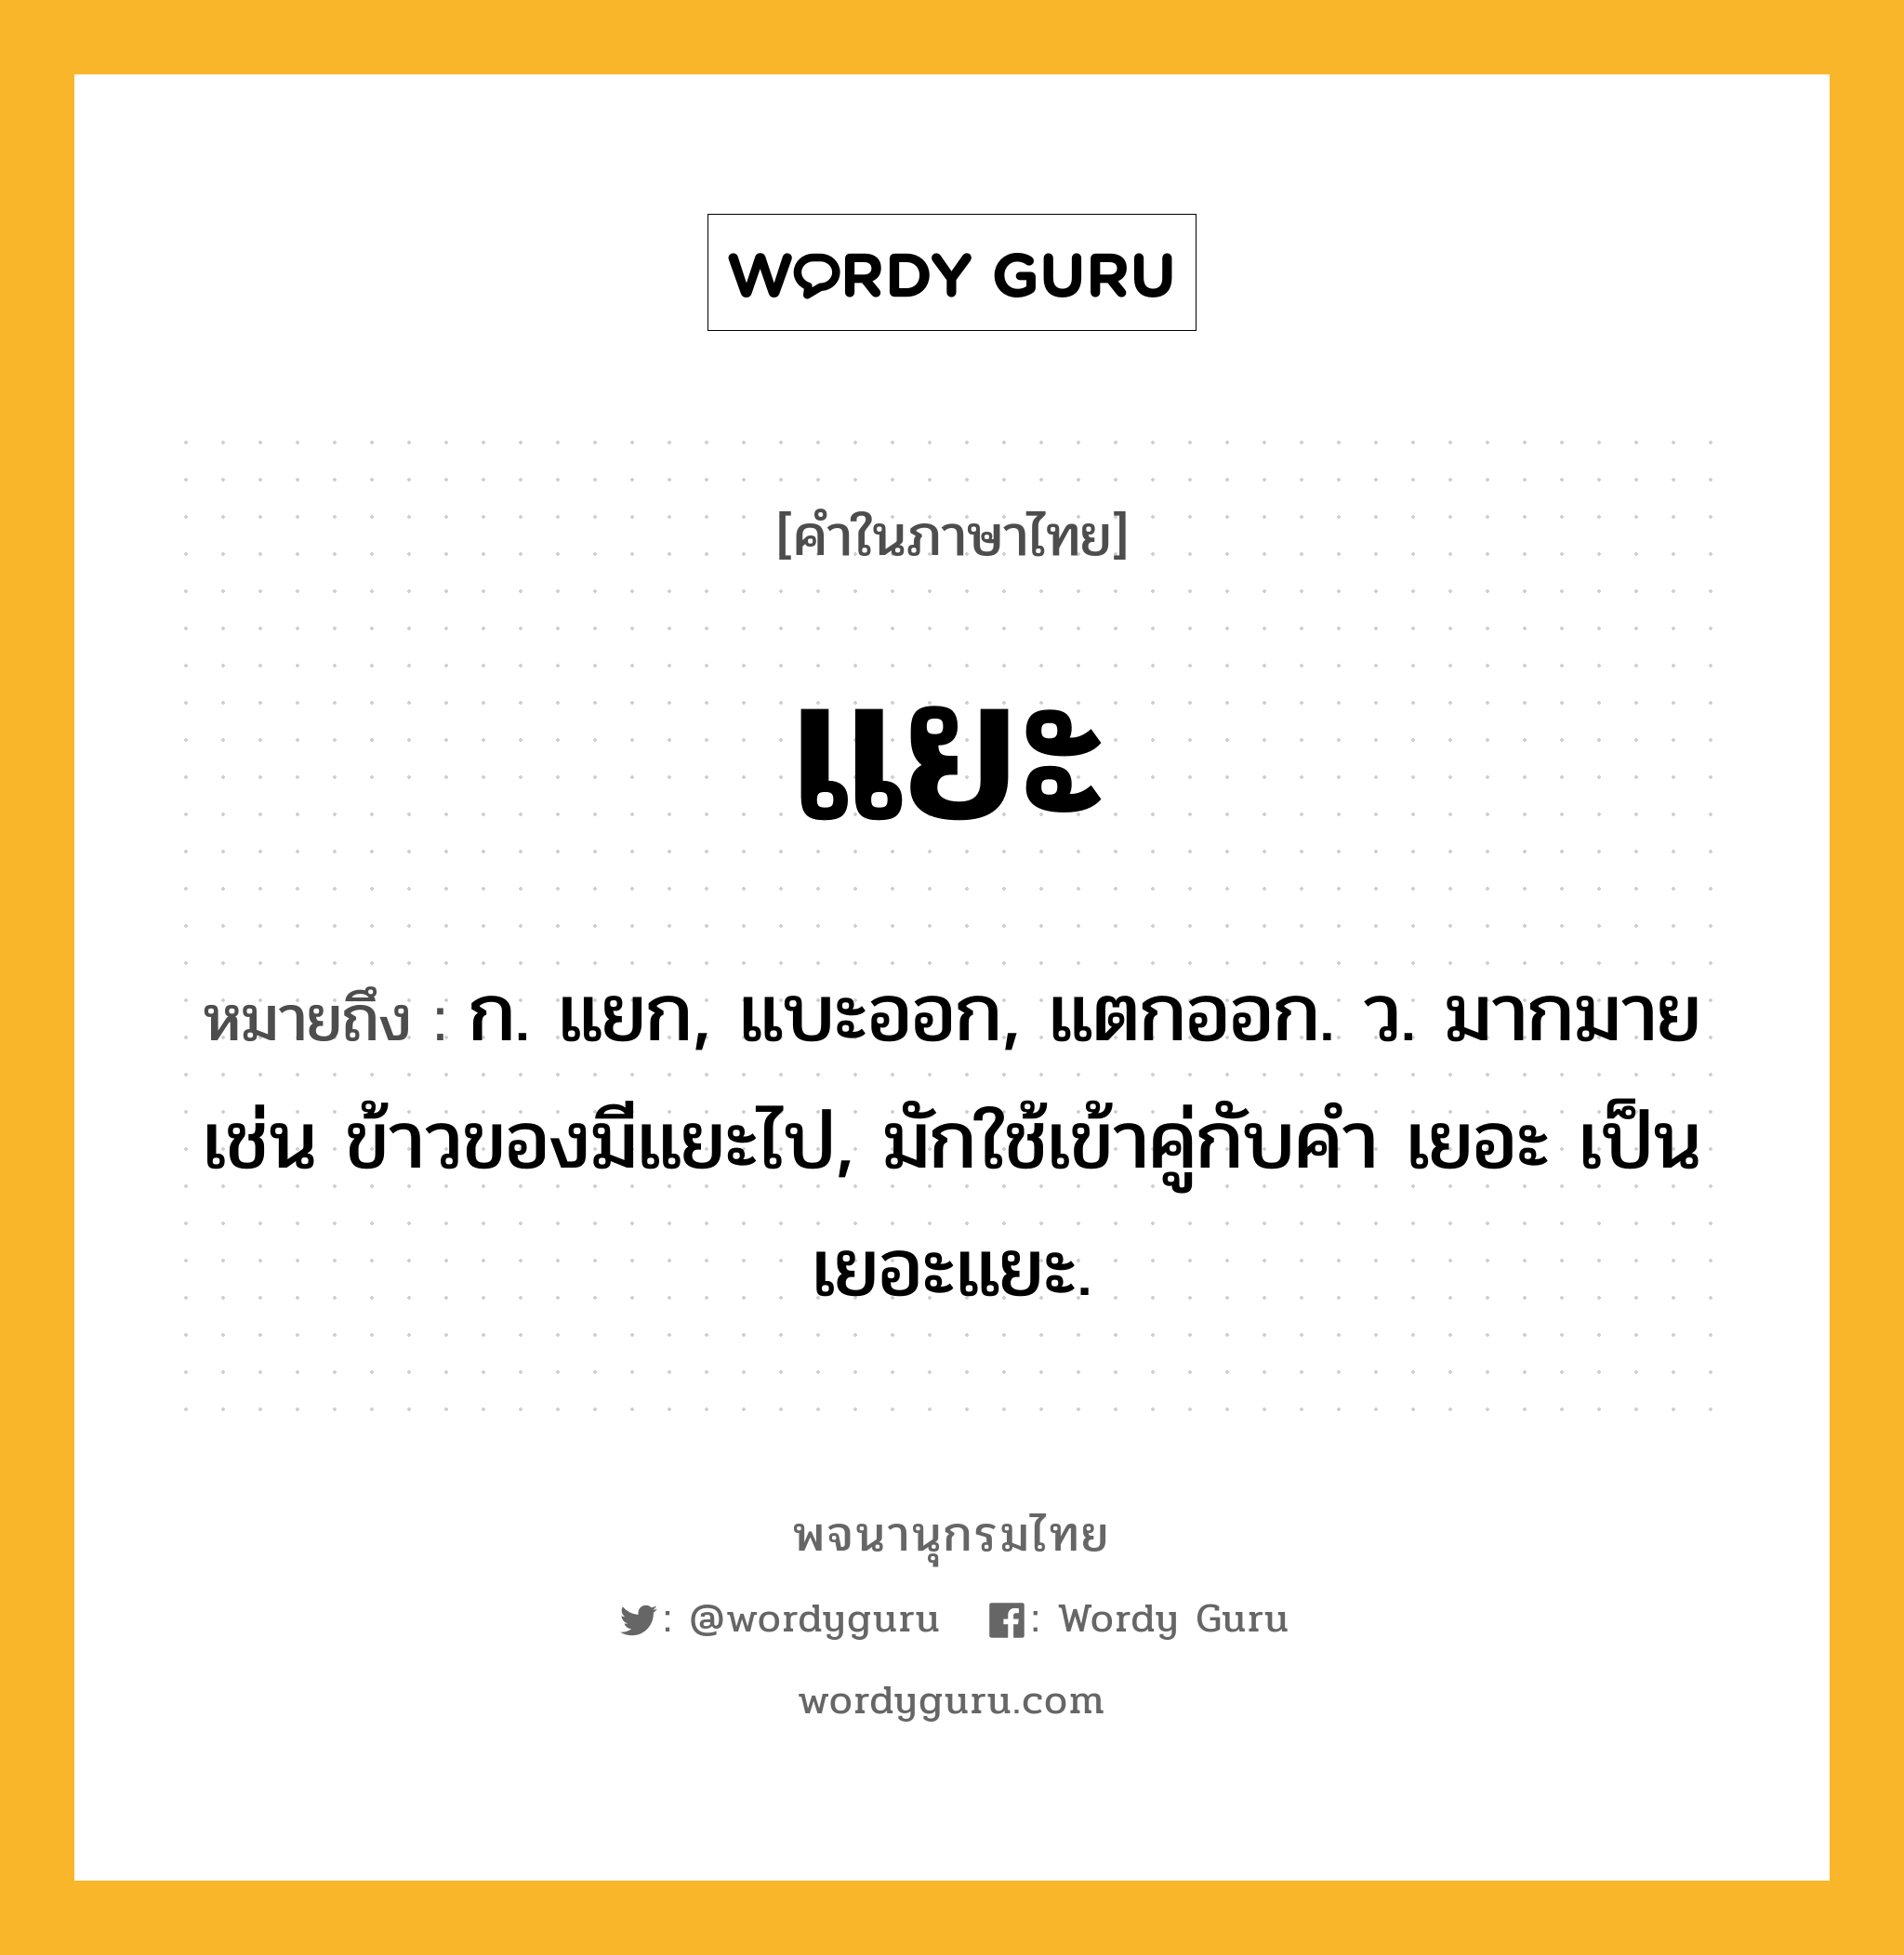 แยะ หมายถึงอะไร?, คำในภาษาไทย แยะ หมายถึง ก. แยก, แบะออก, แตกออก. ว. มากมาย เช่น ข้าวของมีแยะไป, มักใช้เข้าคู่กับคำ เยอะ เป็น เยอะแยะ.